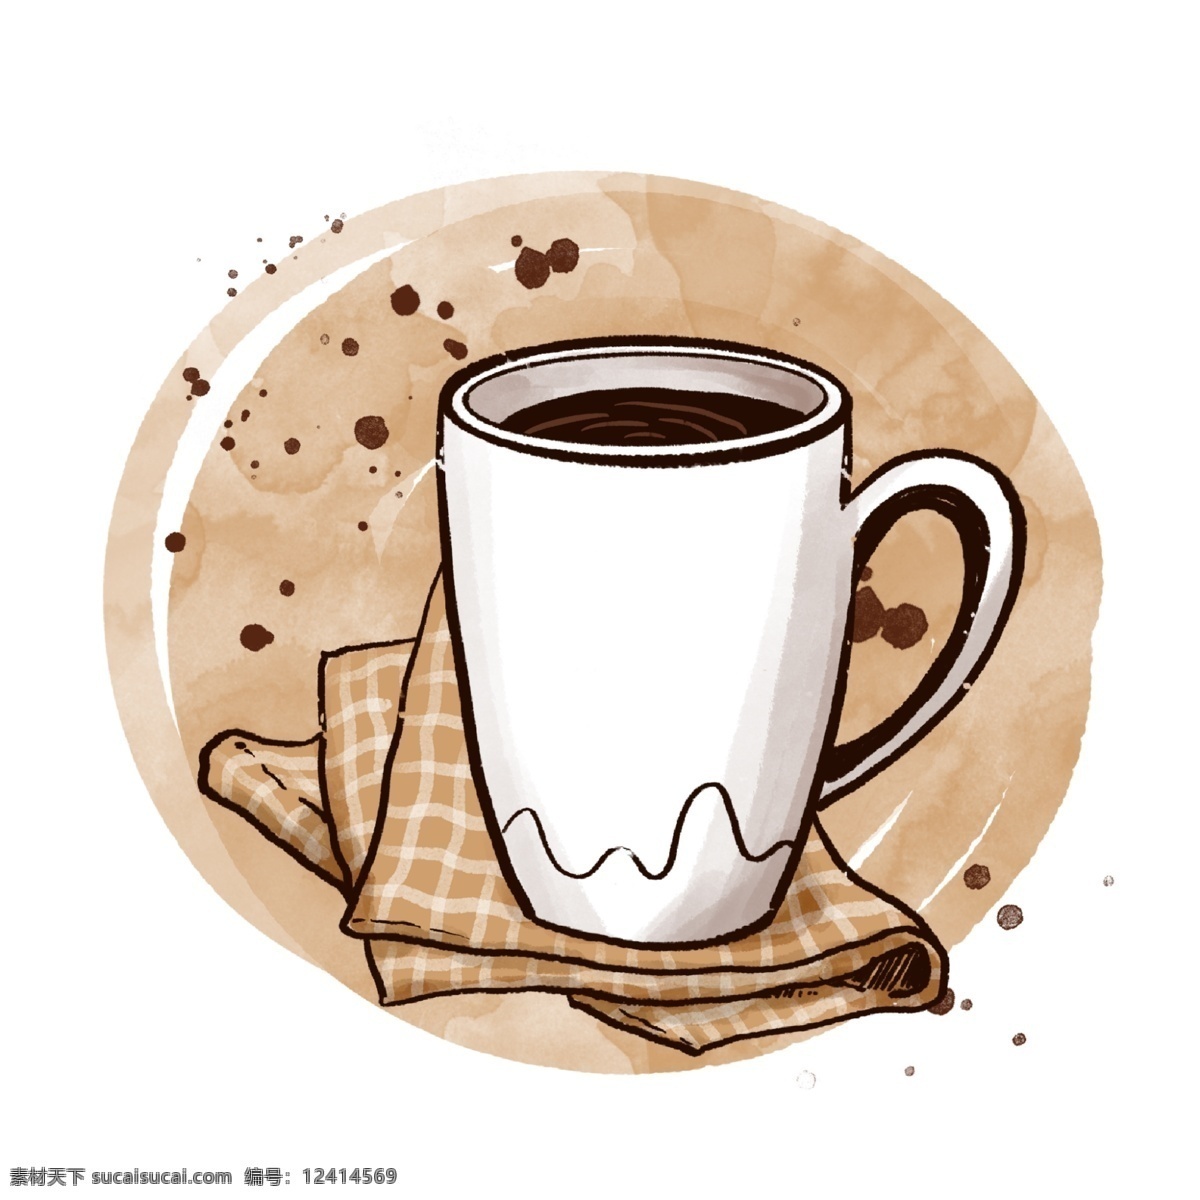 白色 马克杯 咖啡 免 抠 杯子 咖啡杯 卡通杯子 早安 咖啡店 小资 棕色 茶杯 拿铁 拉花 美式咖啡 下午茶 餐布 格子 文艺 咖啡插图